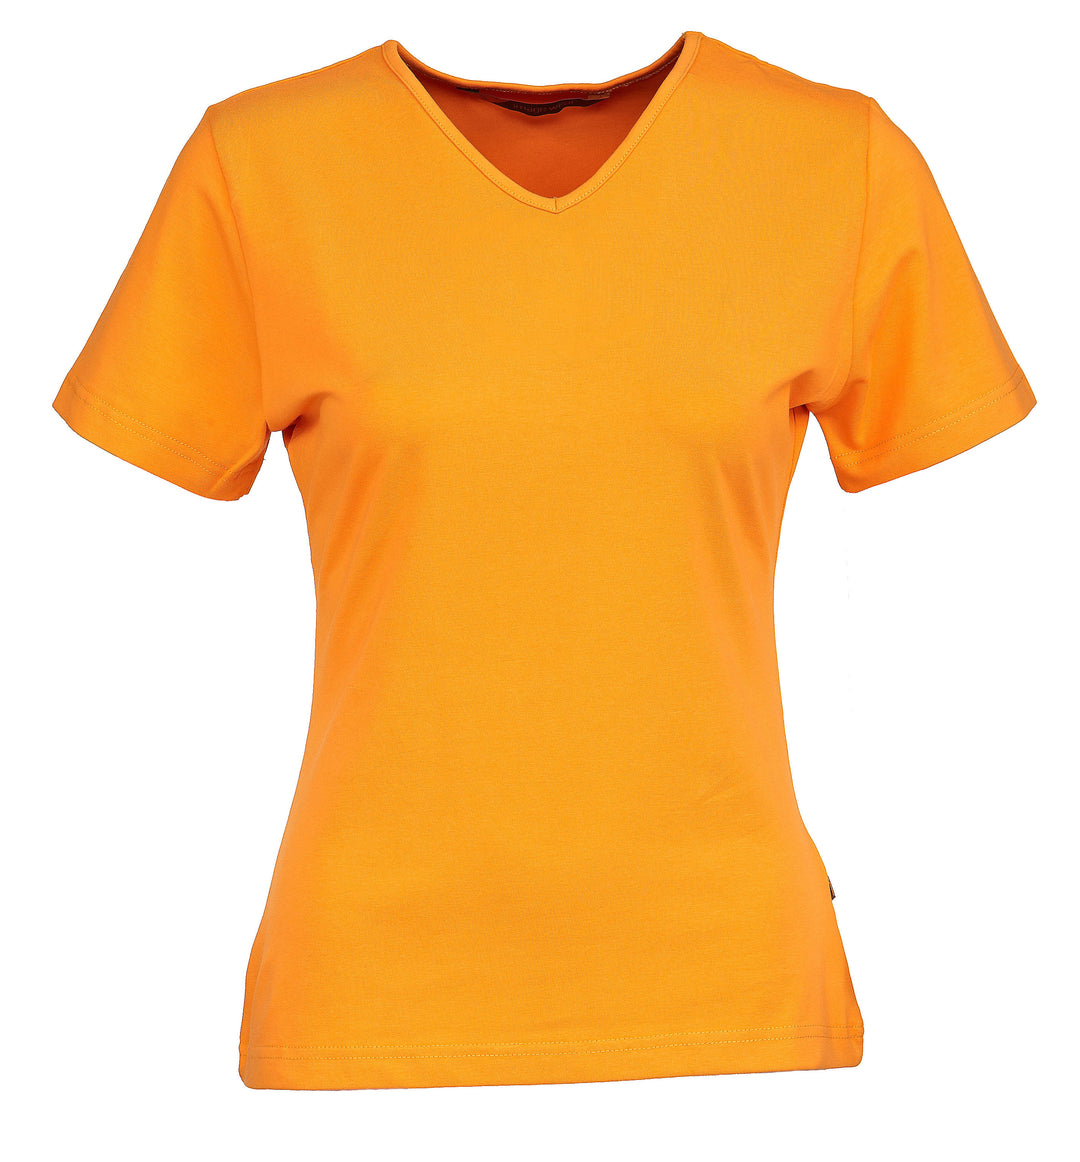 Naisten lyhythihainen oranssi T-paita v-pääntiellä. Malli on aavistuksen tyköistuva. Joustava ja laadukas materiaali.